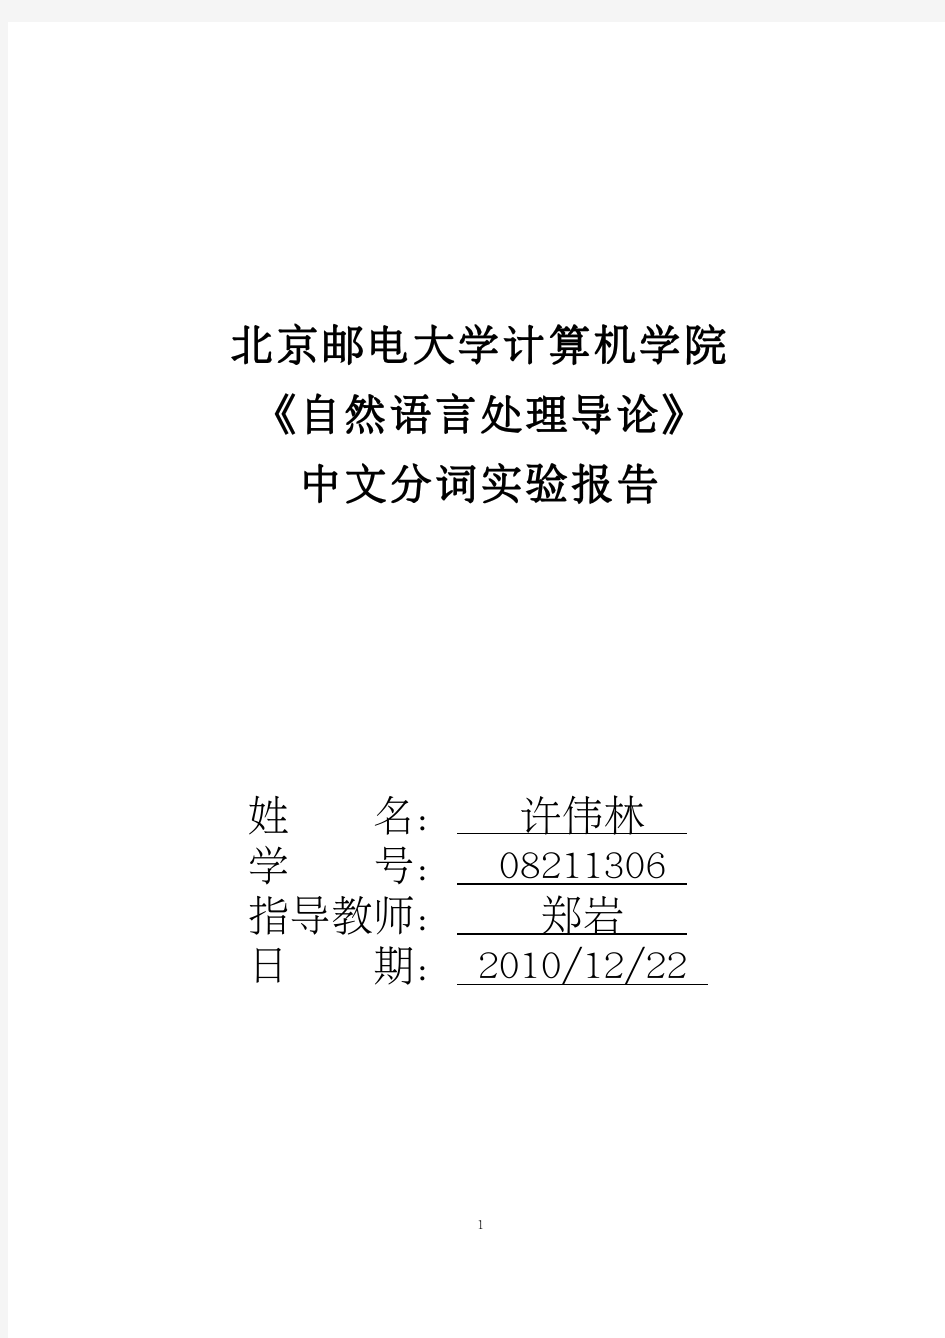 自然语言处理-中文分词程序实验报告(含源代码)